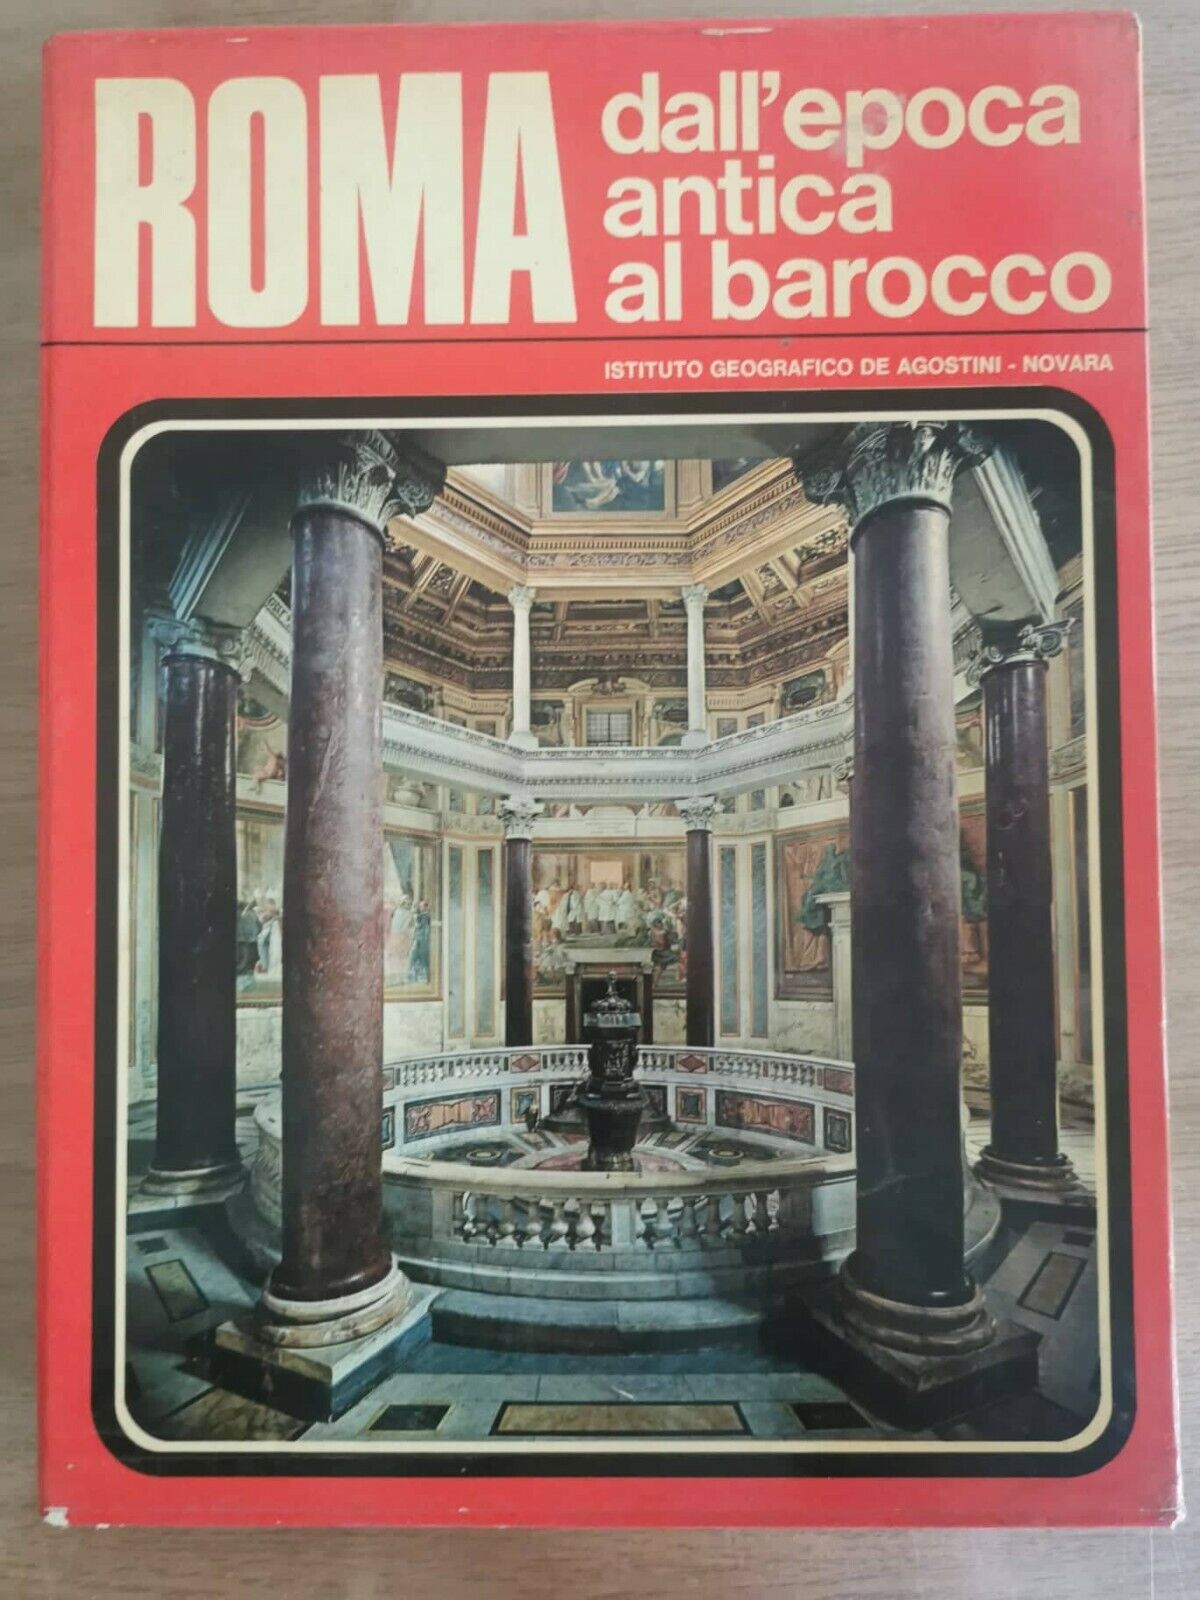 Roma: dall'epoca antica al barocco - AA. VV. - DeAgostini - 1972 - AR